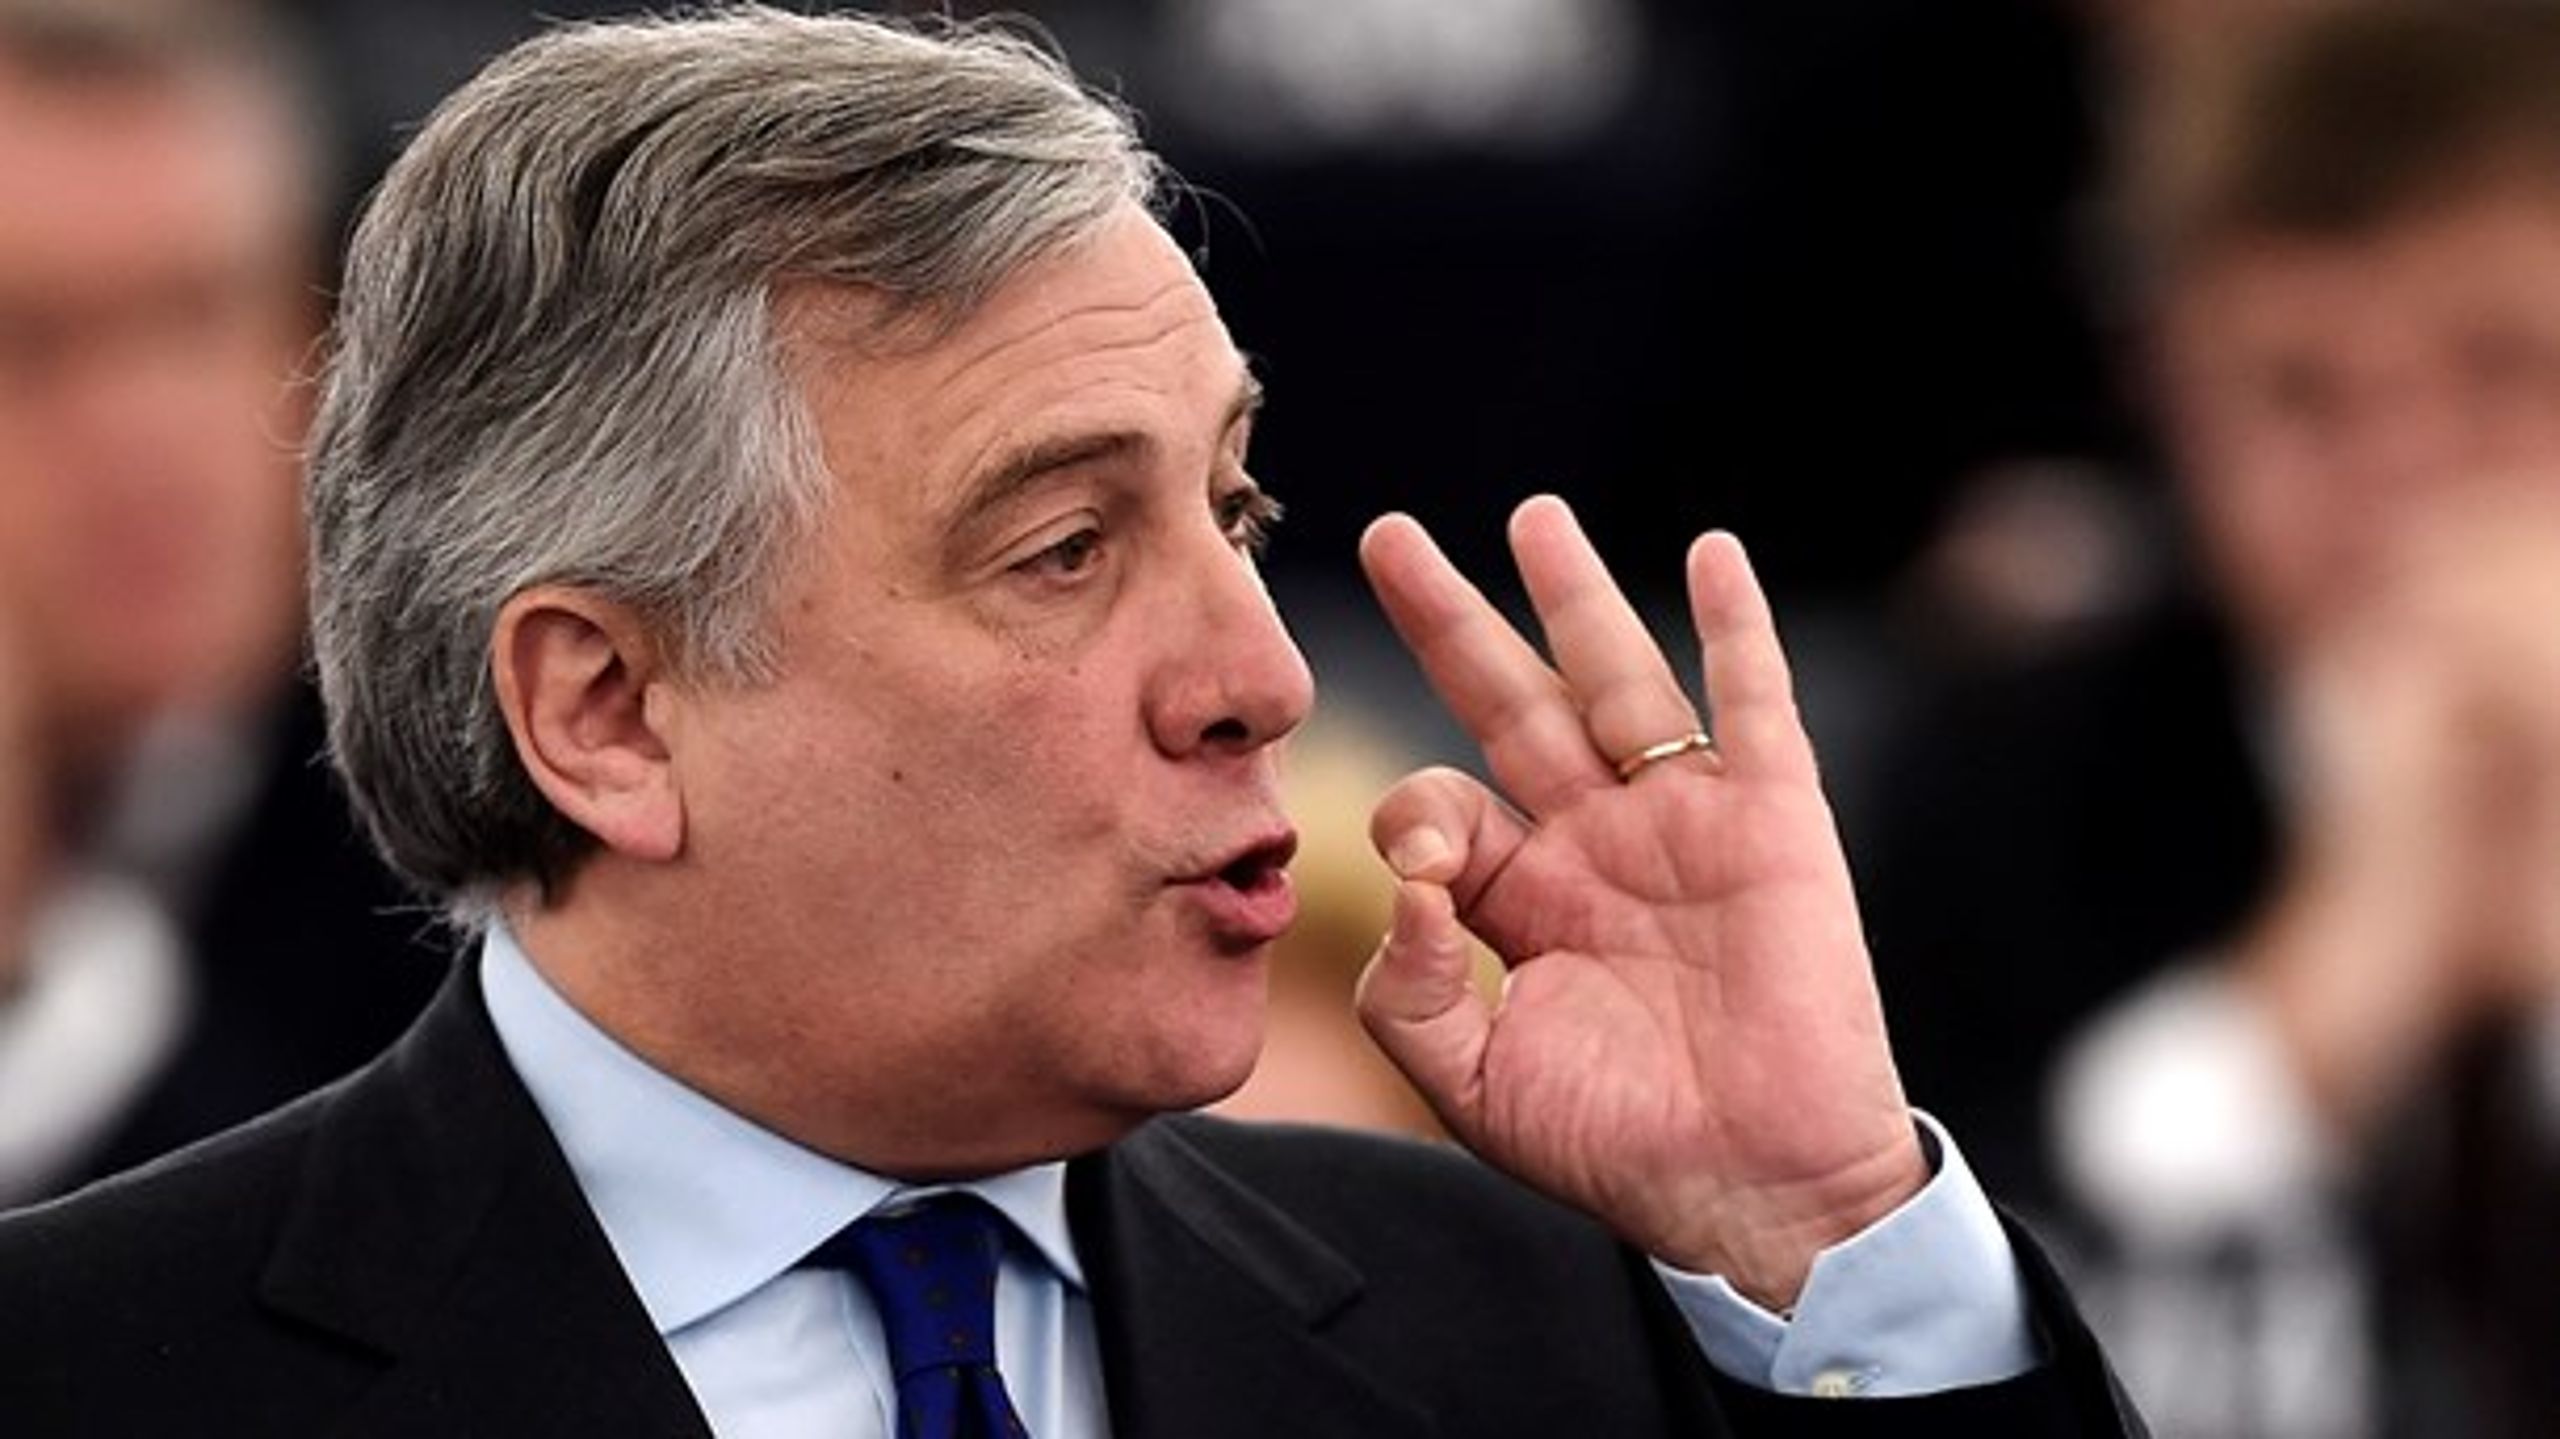 Den tidligere officer i det italienske flyvevåben, journalist og medstifter af partiet&nbsp;Forza Italia, Antonio Tajani, er nu formand for Europa-Parlamentet.